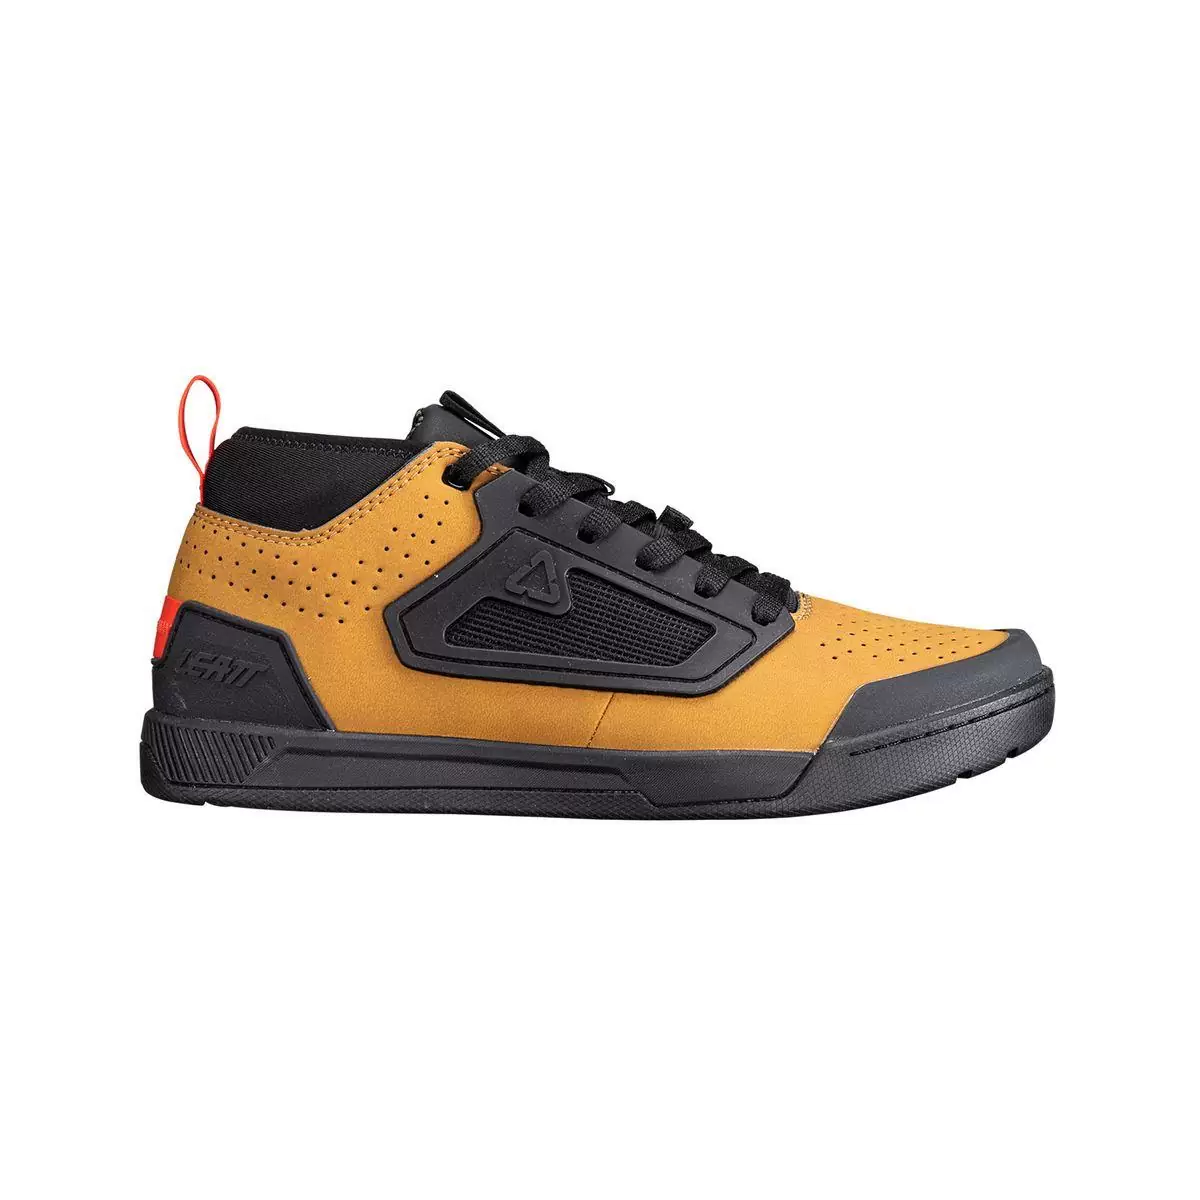 Chaussures VTT Flat 3.0 marron/noir taille 40 #1